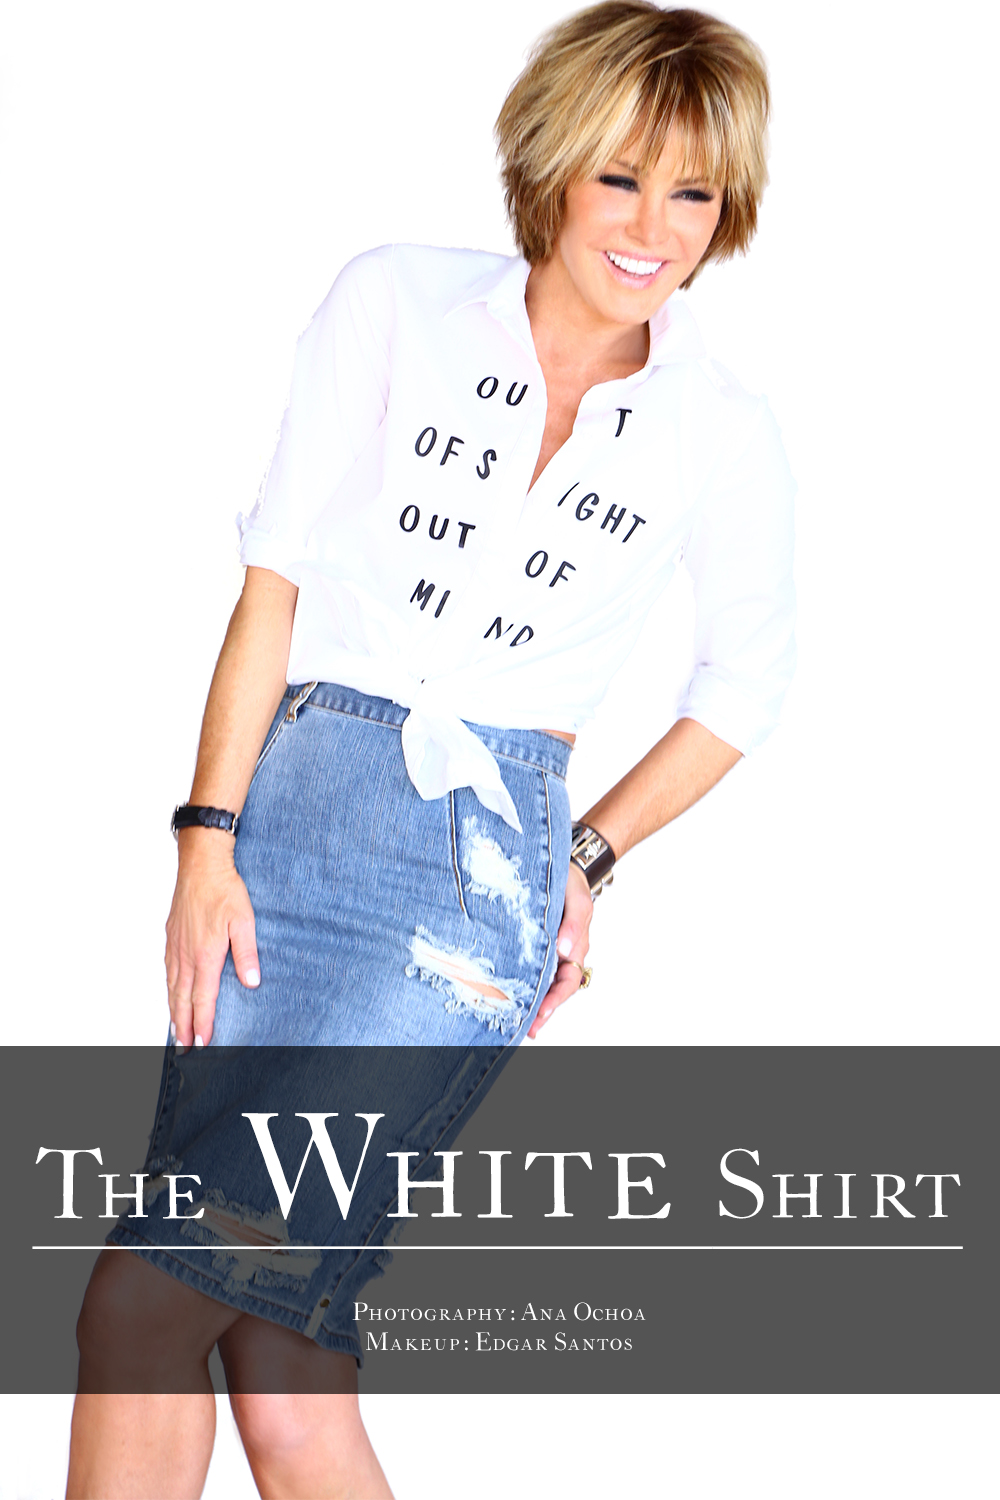 laura-dunn-white-shirt-title-1